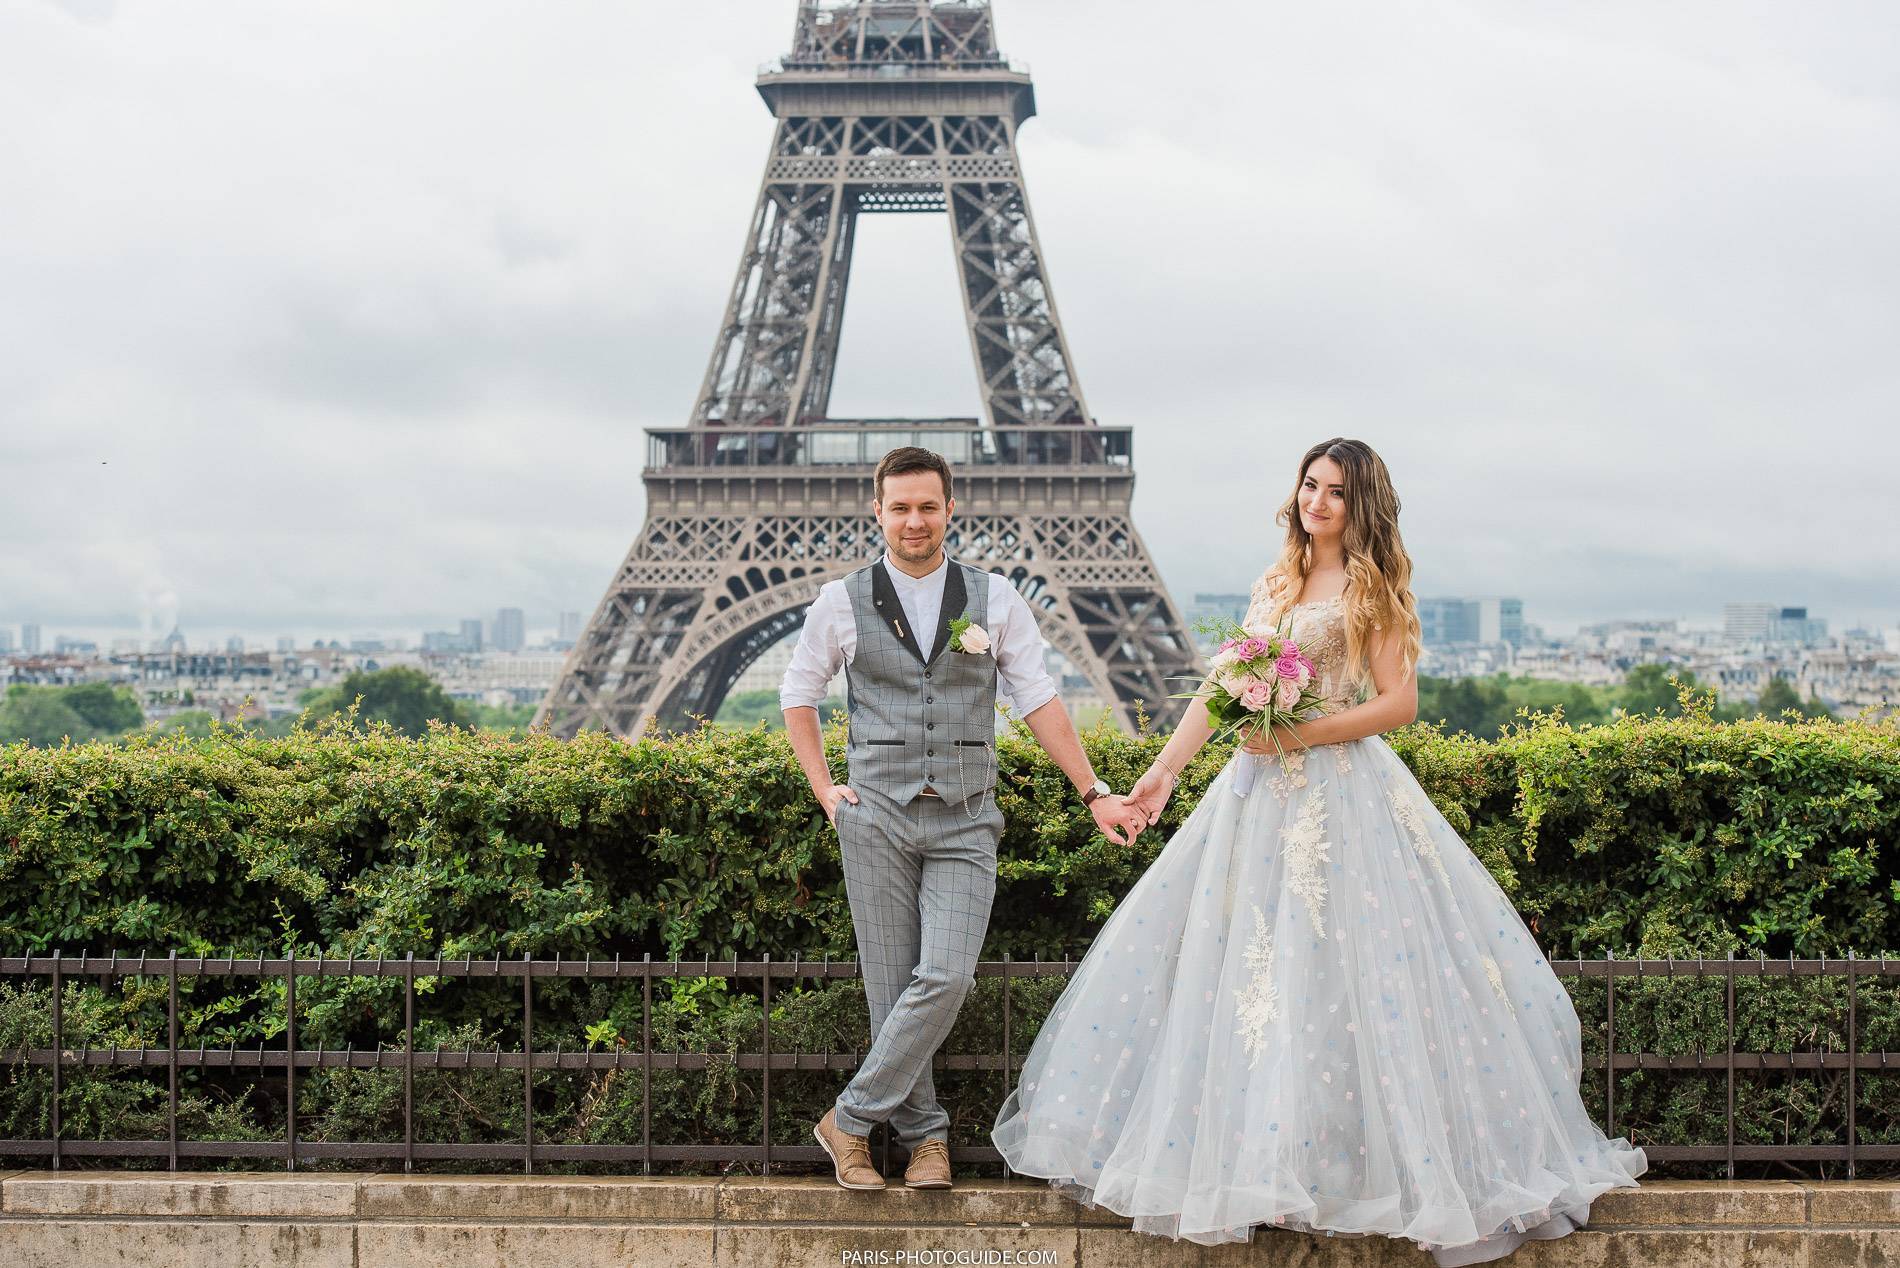 Свадьба в стиле париж: идеи оформления, образ жениха и невесты, фото и видео